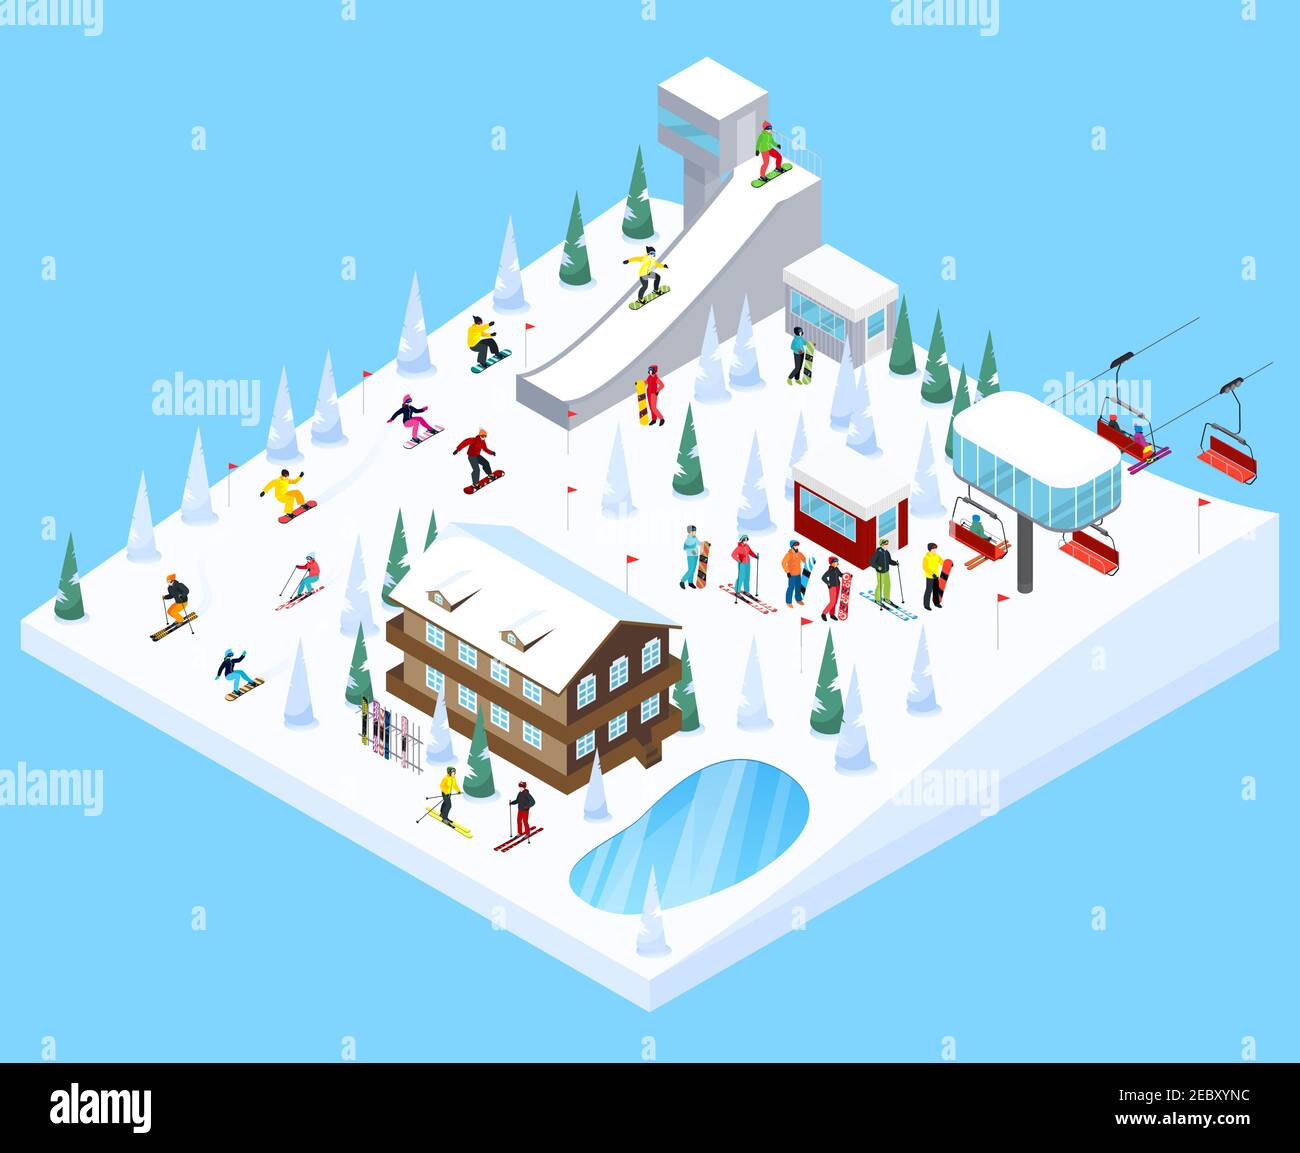 Bergresort Dorf isometrische Landschaft Konstruktor Element mit verkleinert Skisprungschanze Bäume Häuser Skisprungrampen Vektor-Illustration Stock Vektor